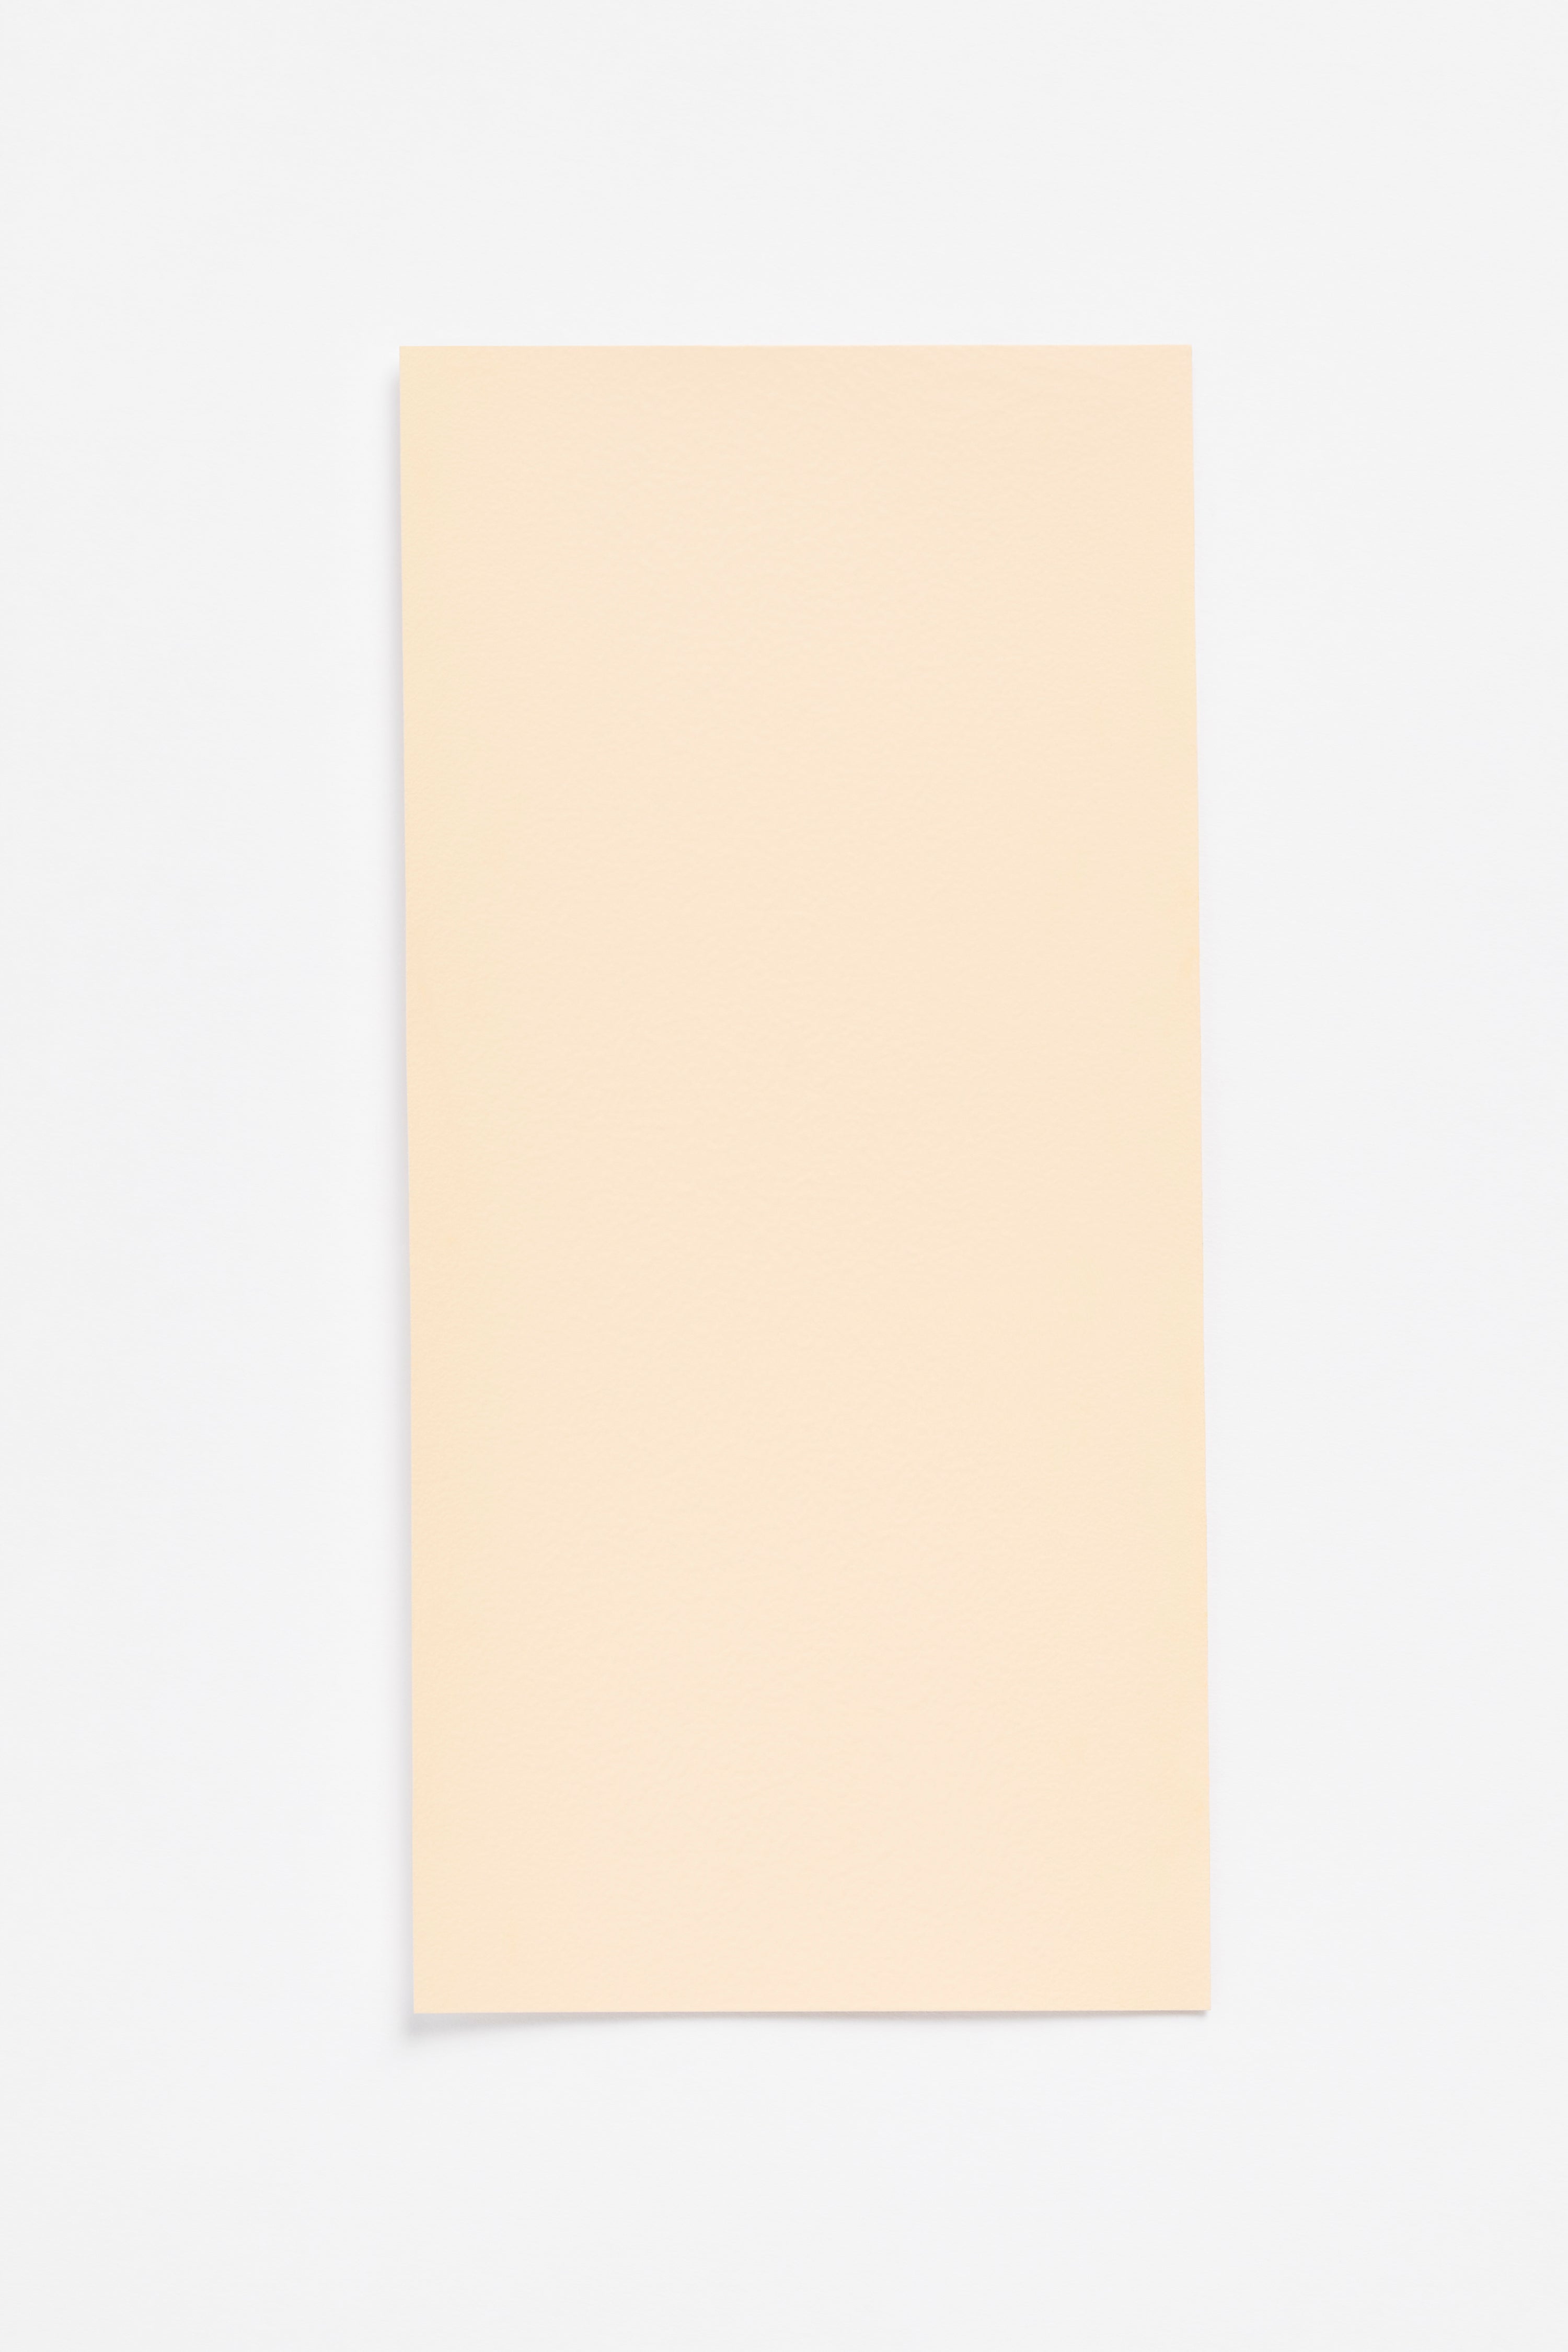 Armoricaine — a paint colour developed by Inga Sempé for Blēo